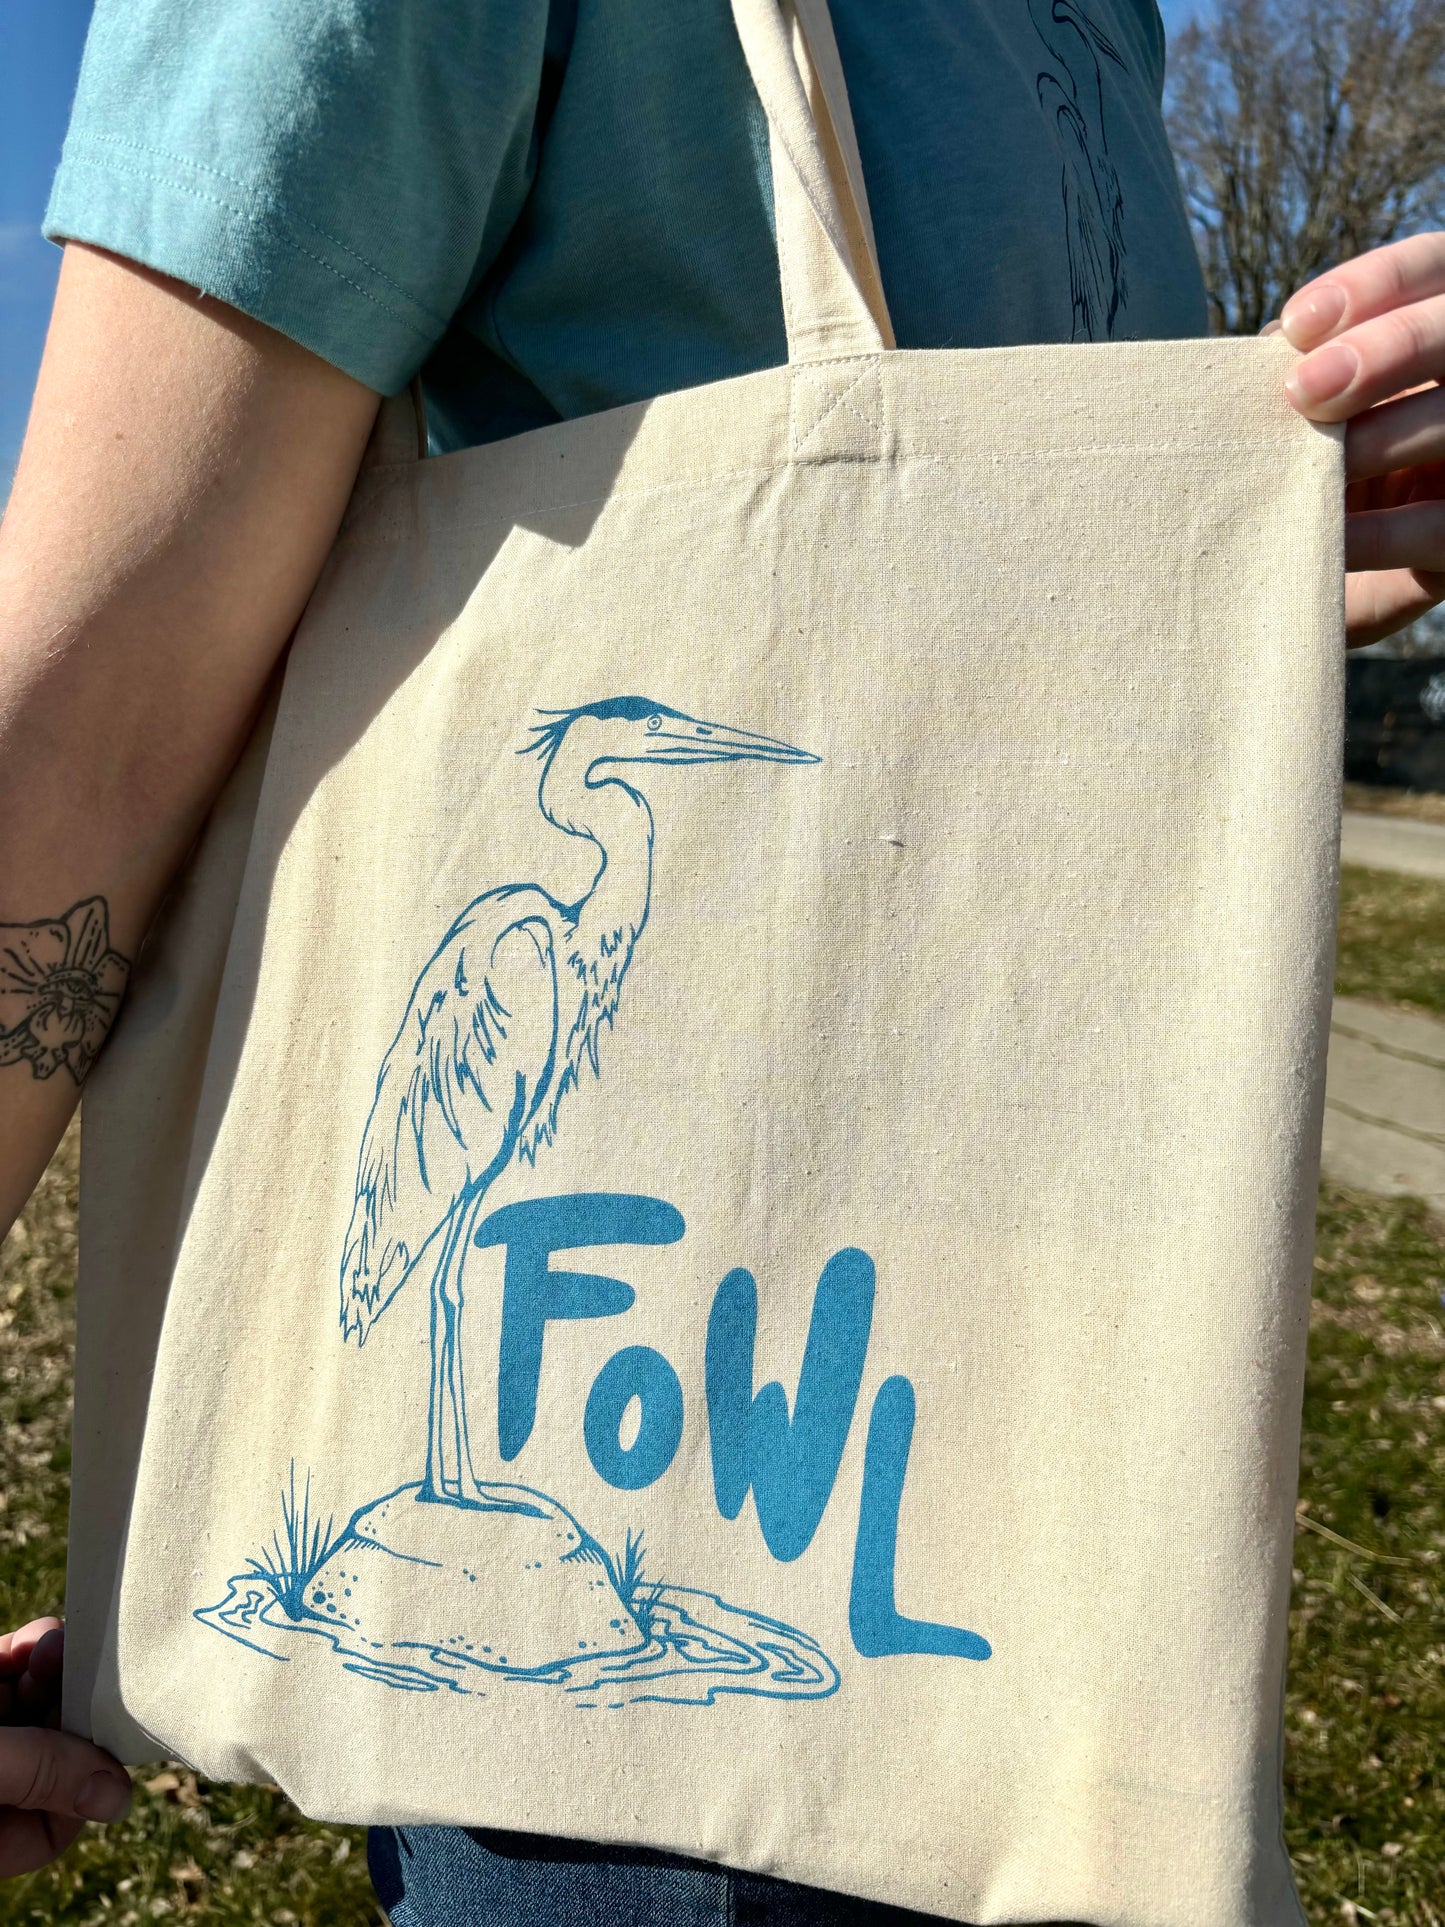 Fowl (Blue Heron) Tote Bag